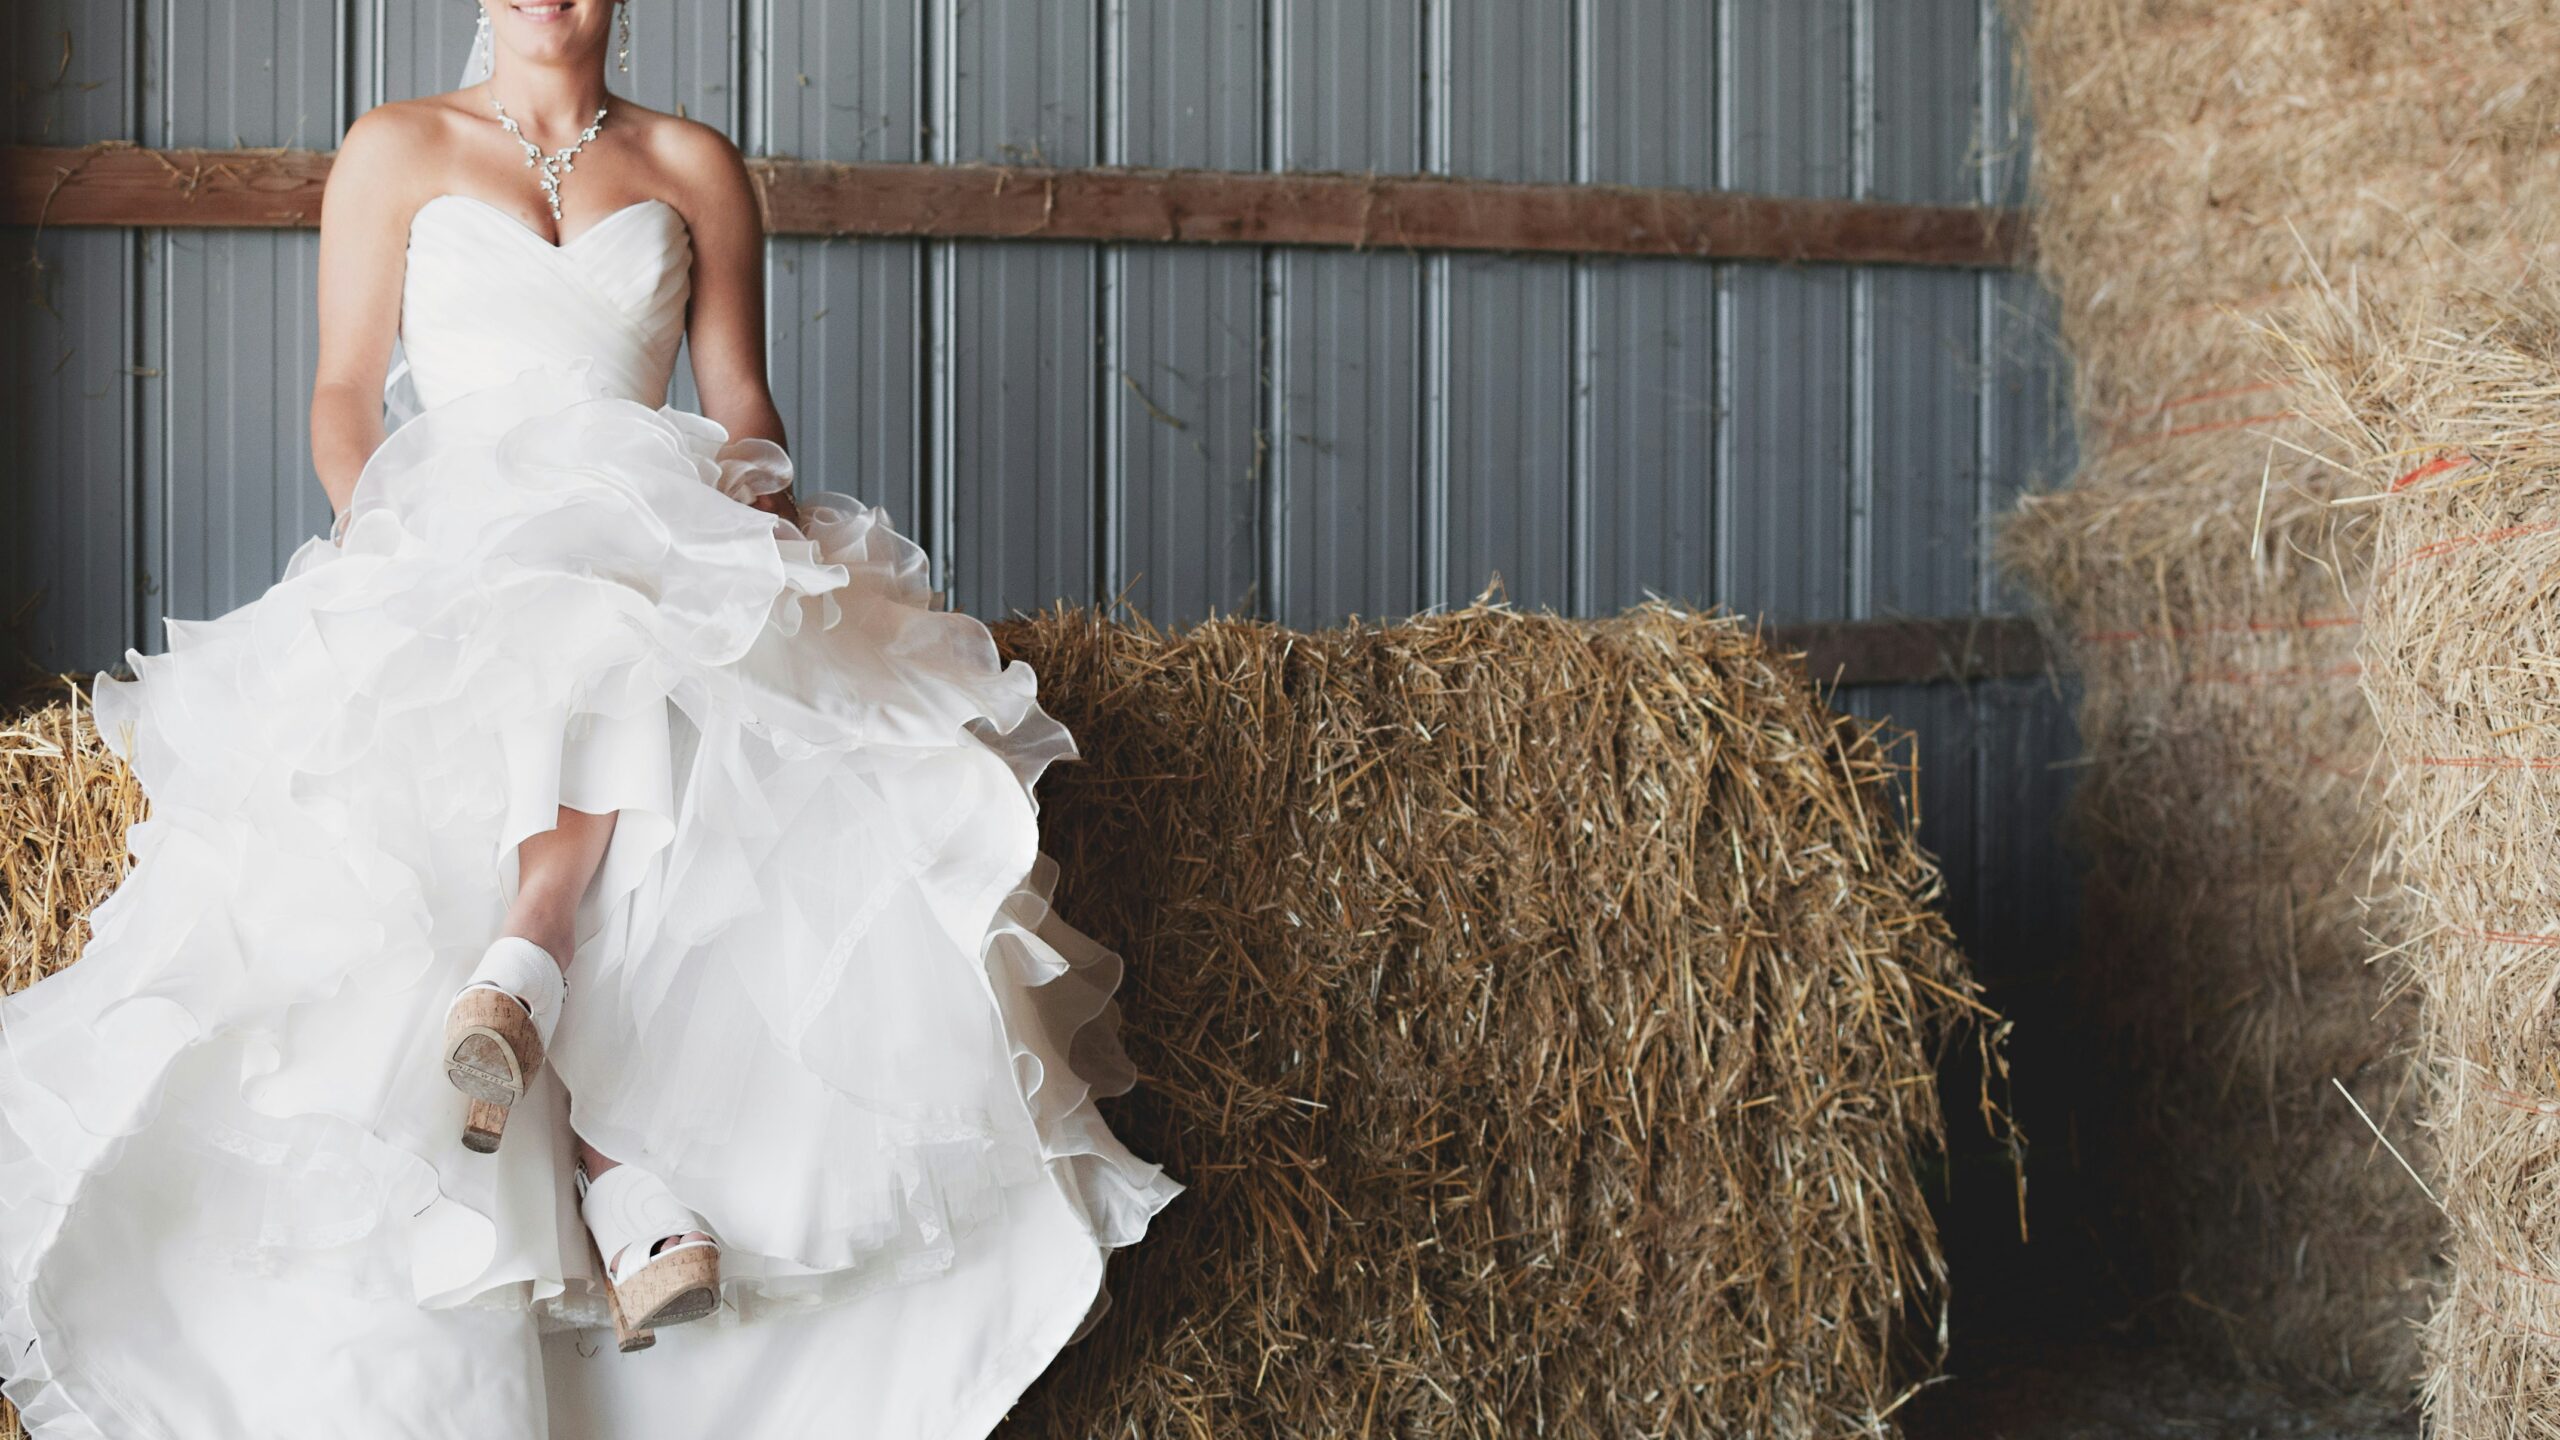 découvrez notre collection de robes de mariée pour un mariage inoubliable. trouvez la robe parfaite pour dire 'oui' à l'amour de votre vie.